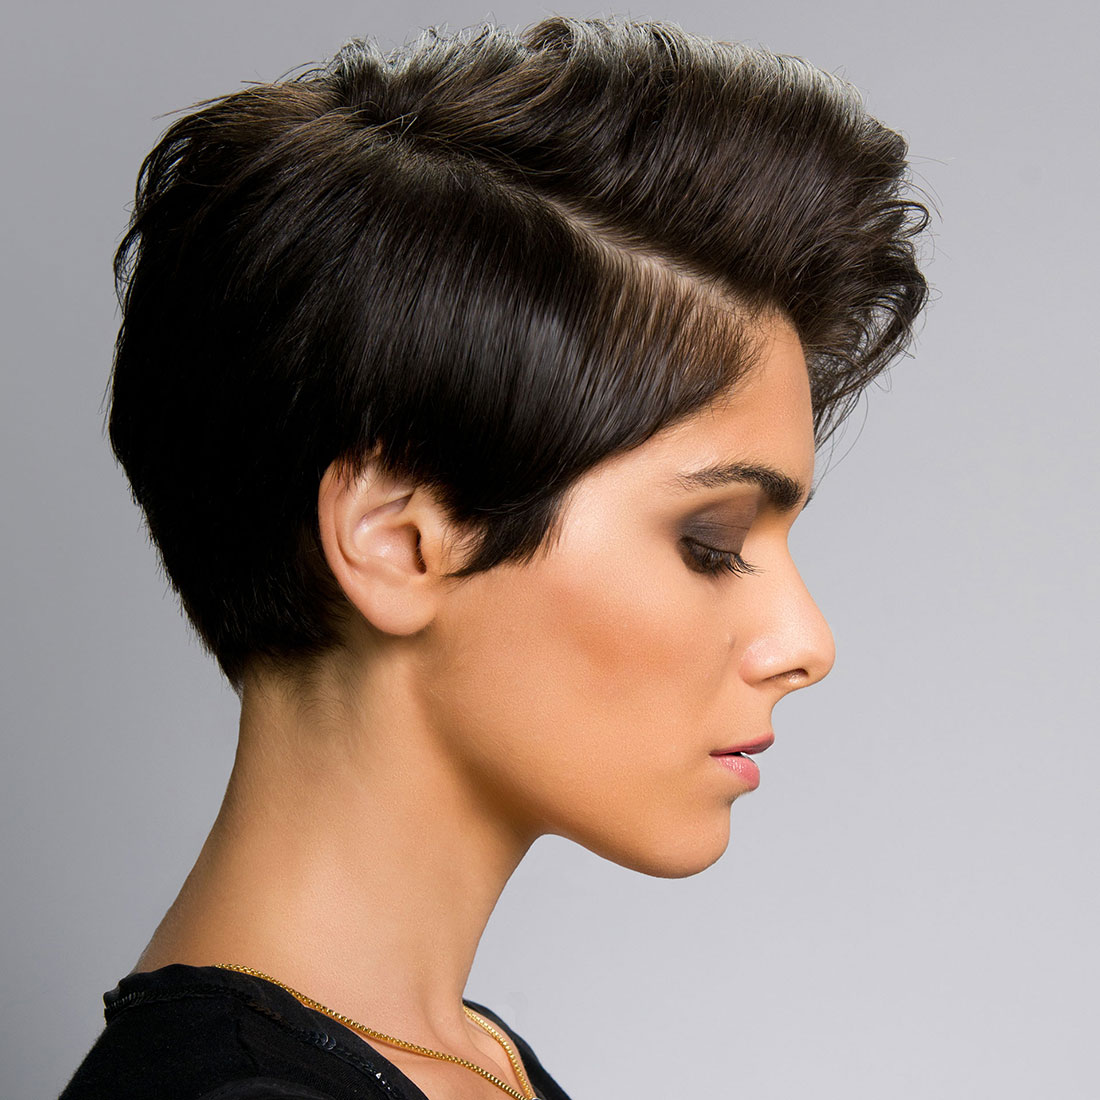 Profielfoto van een fotomodel met kort opgeknipt geknipt donkerbruin zwart haar aan de zijkant en een lok met een zijscheiding.